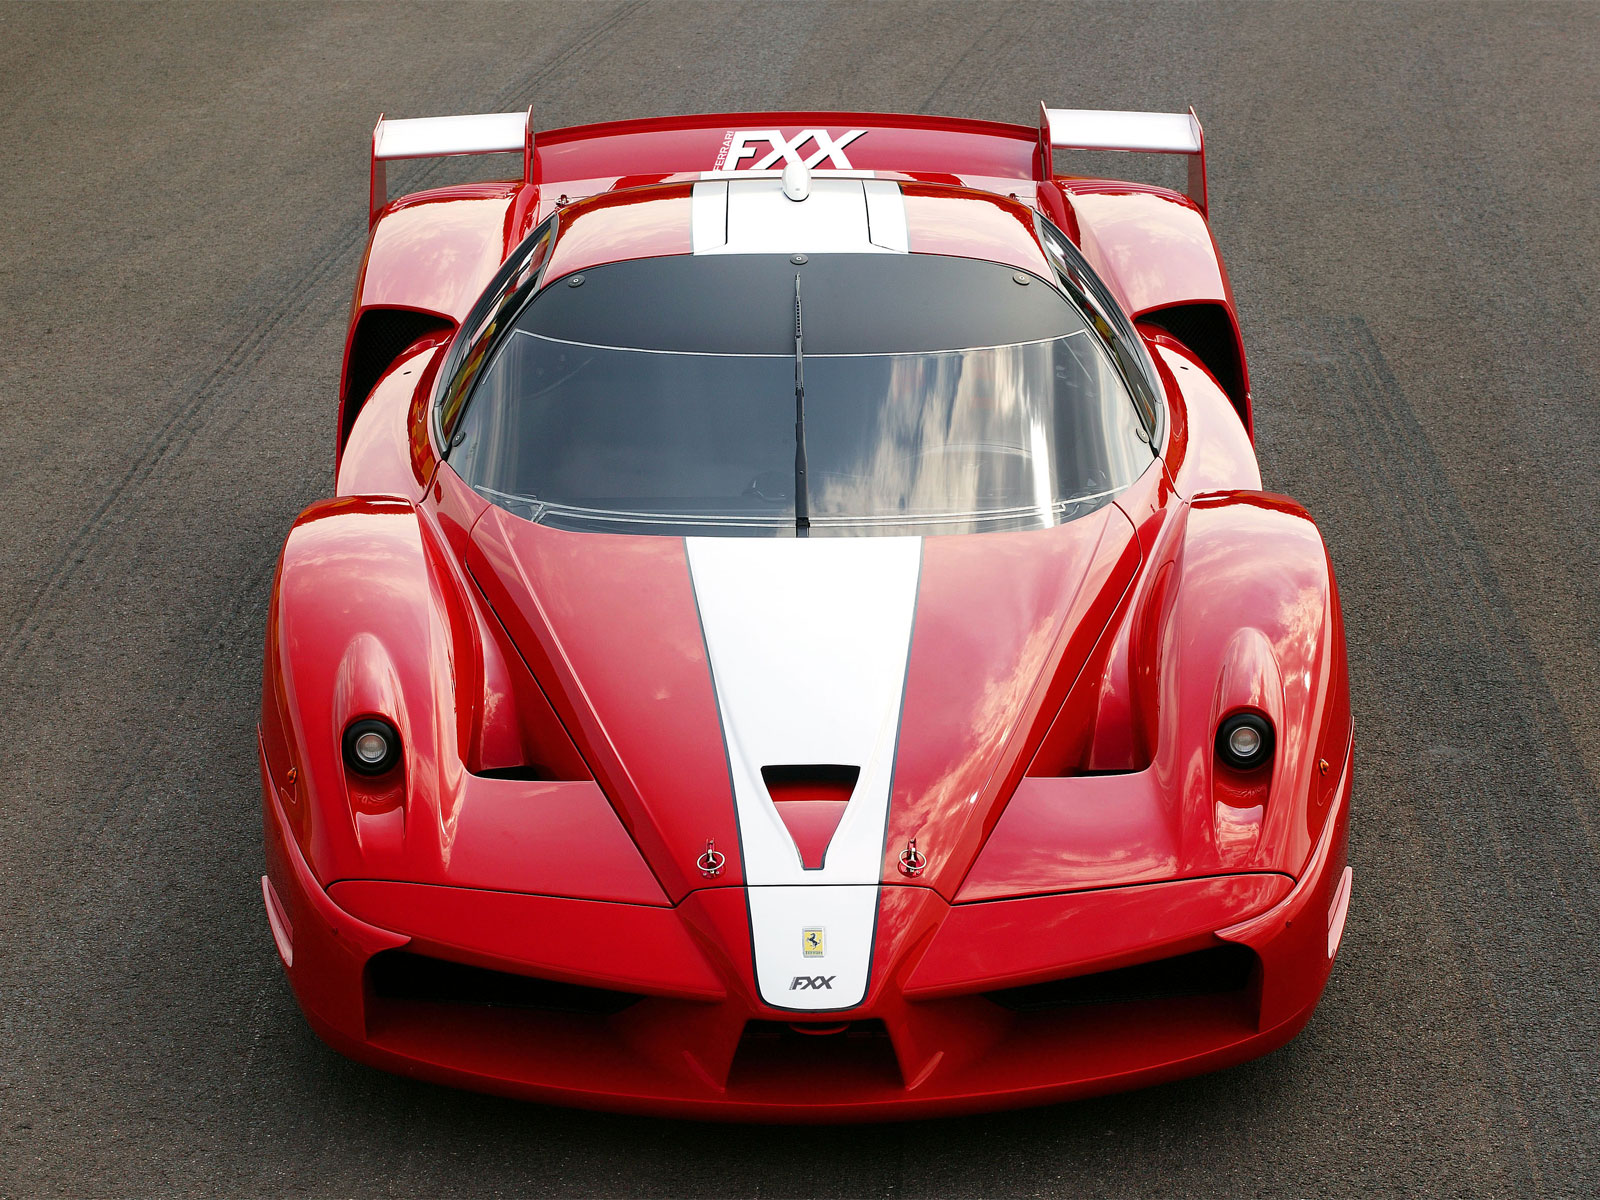 Ferrari Fxx Evolution Price